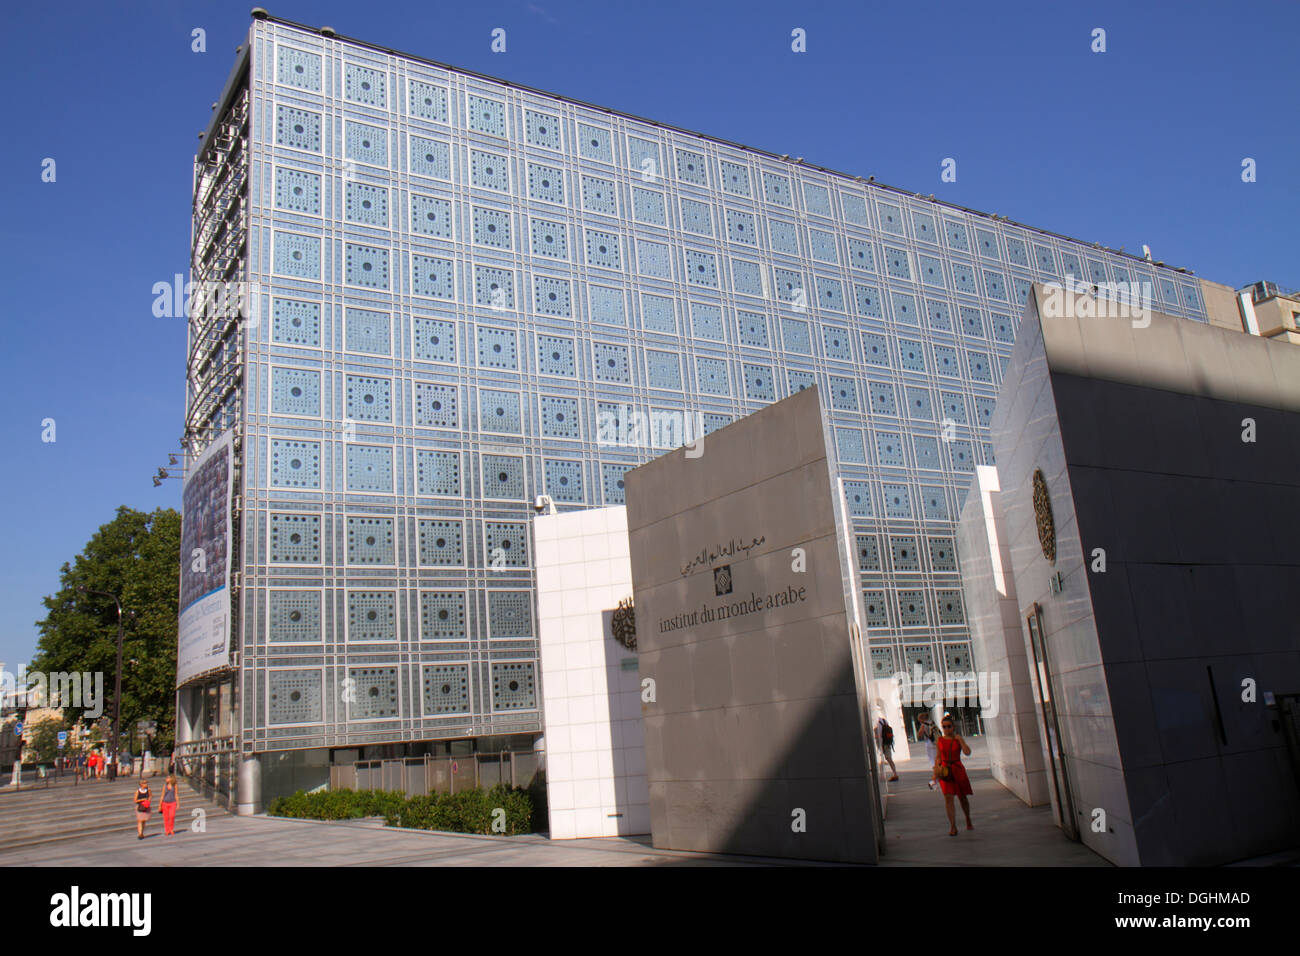 Paris France,5ème arrondissement,Institut du monde arabe,AWI,Institut du monde arabe,extérieur,extérieur,bâtiment,mur de verre,brise-soleil motorisé Banque D'Images